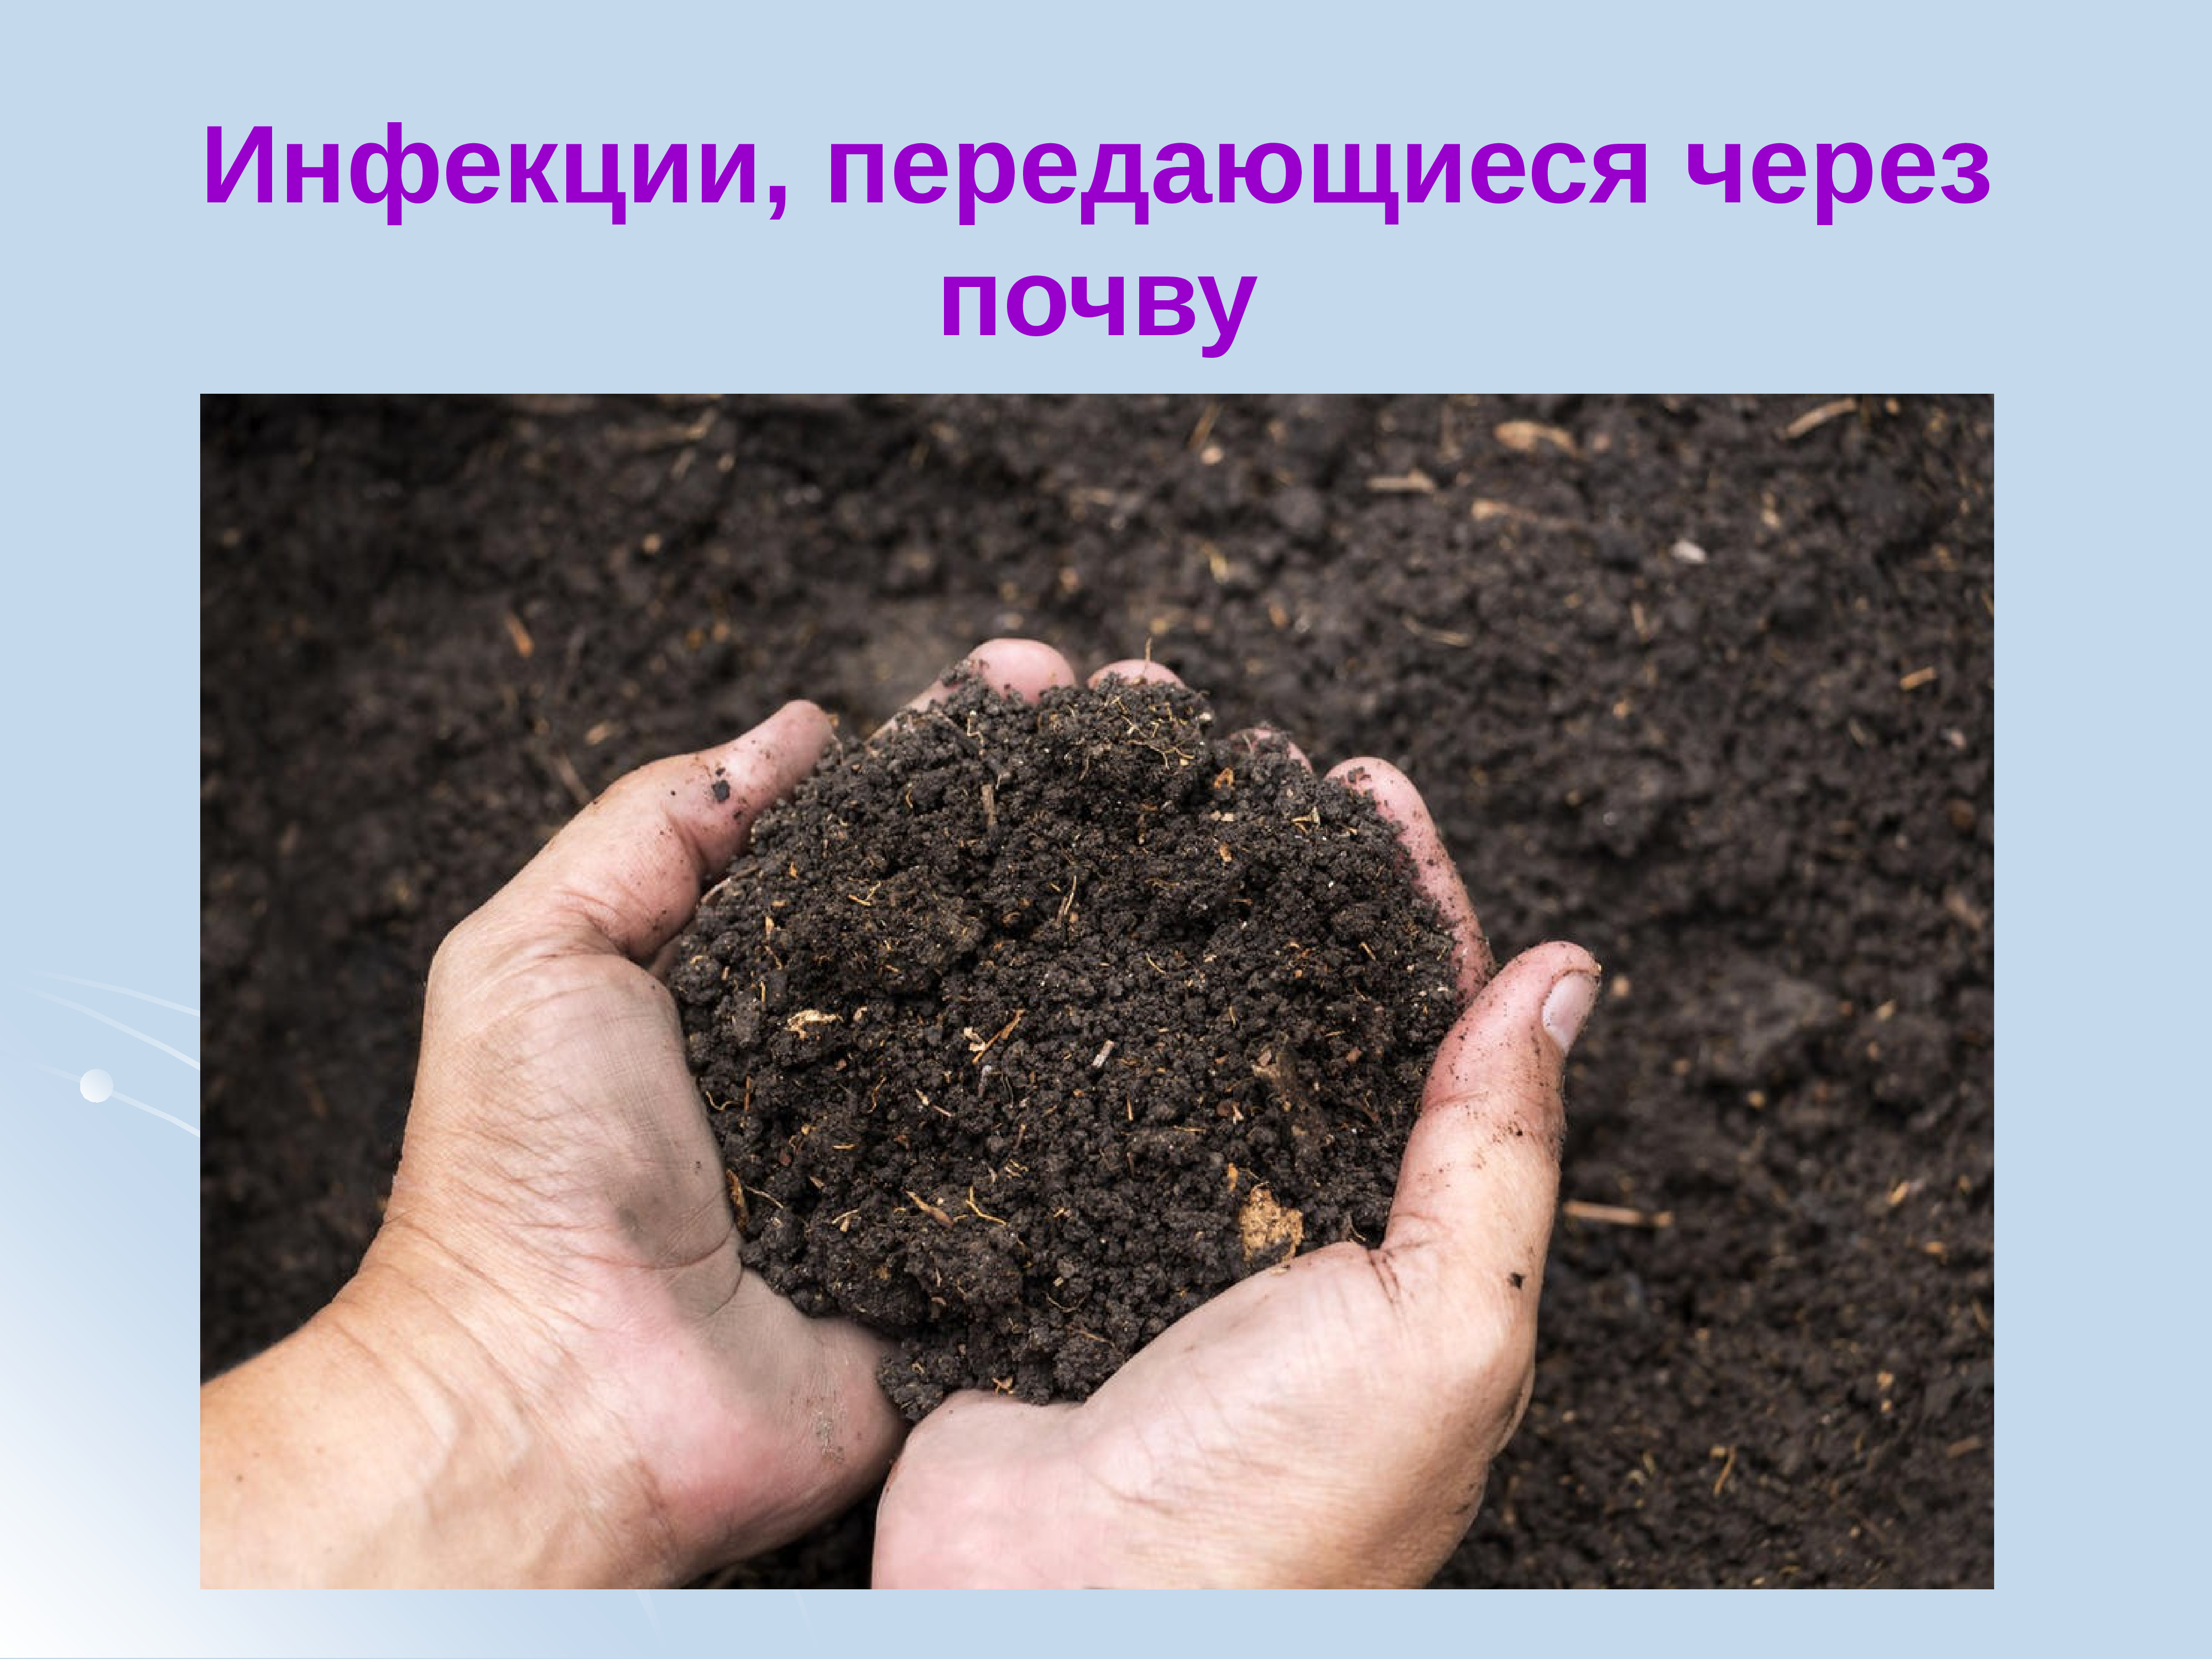 Инфекции в почве. Инфекции передающиеся через почву. Заболевания передаваемые через почву. Почва источник инфекции. Через почв.